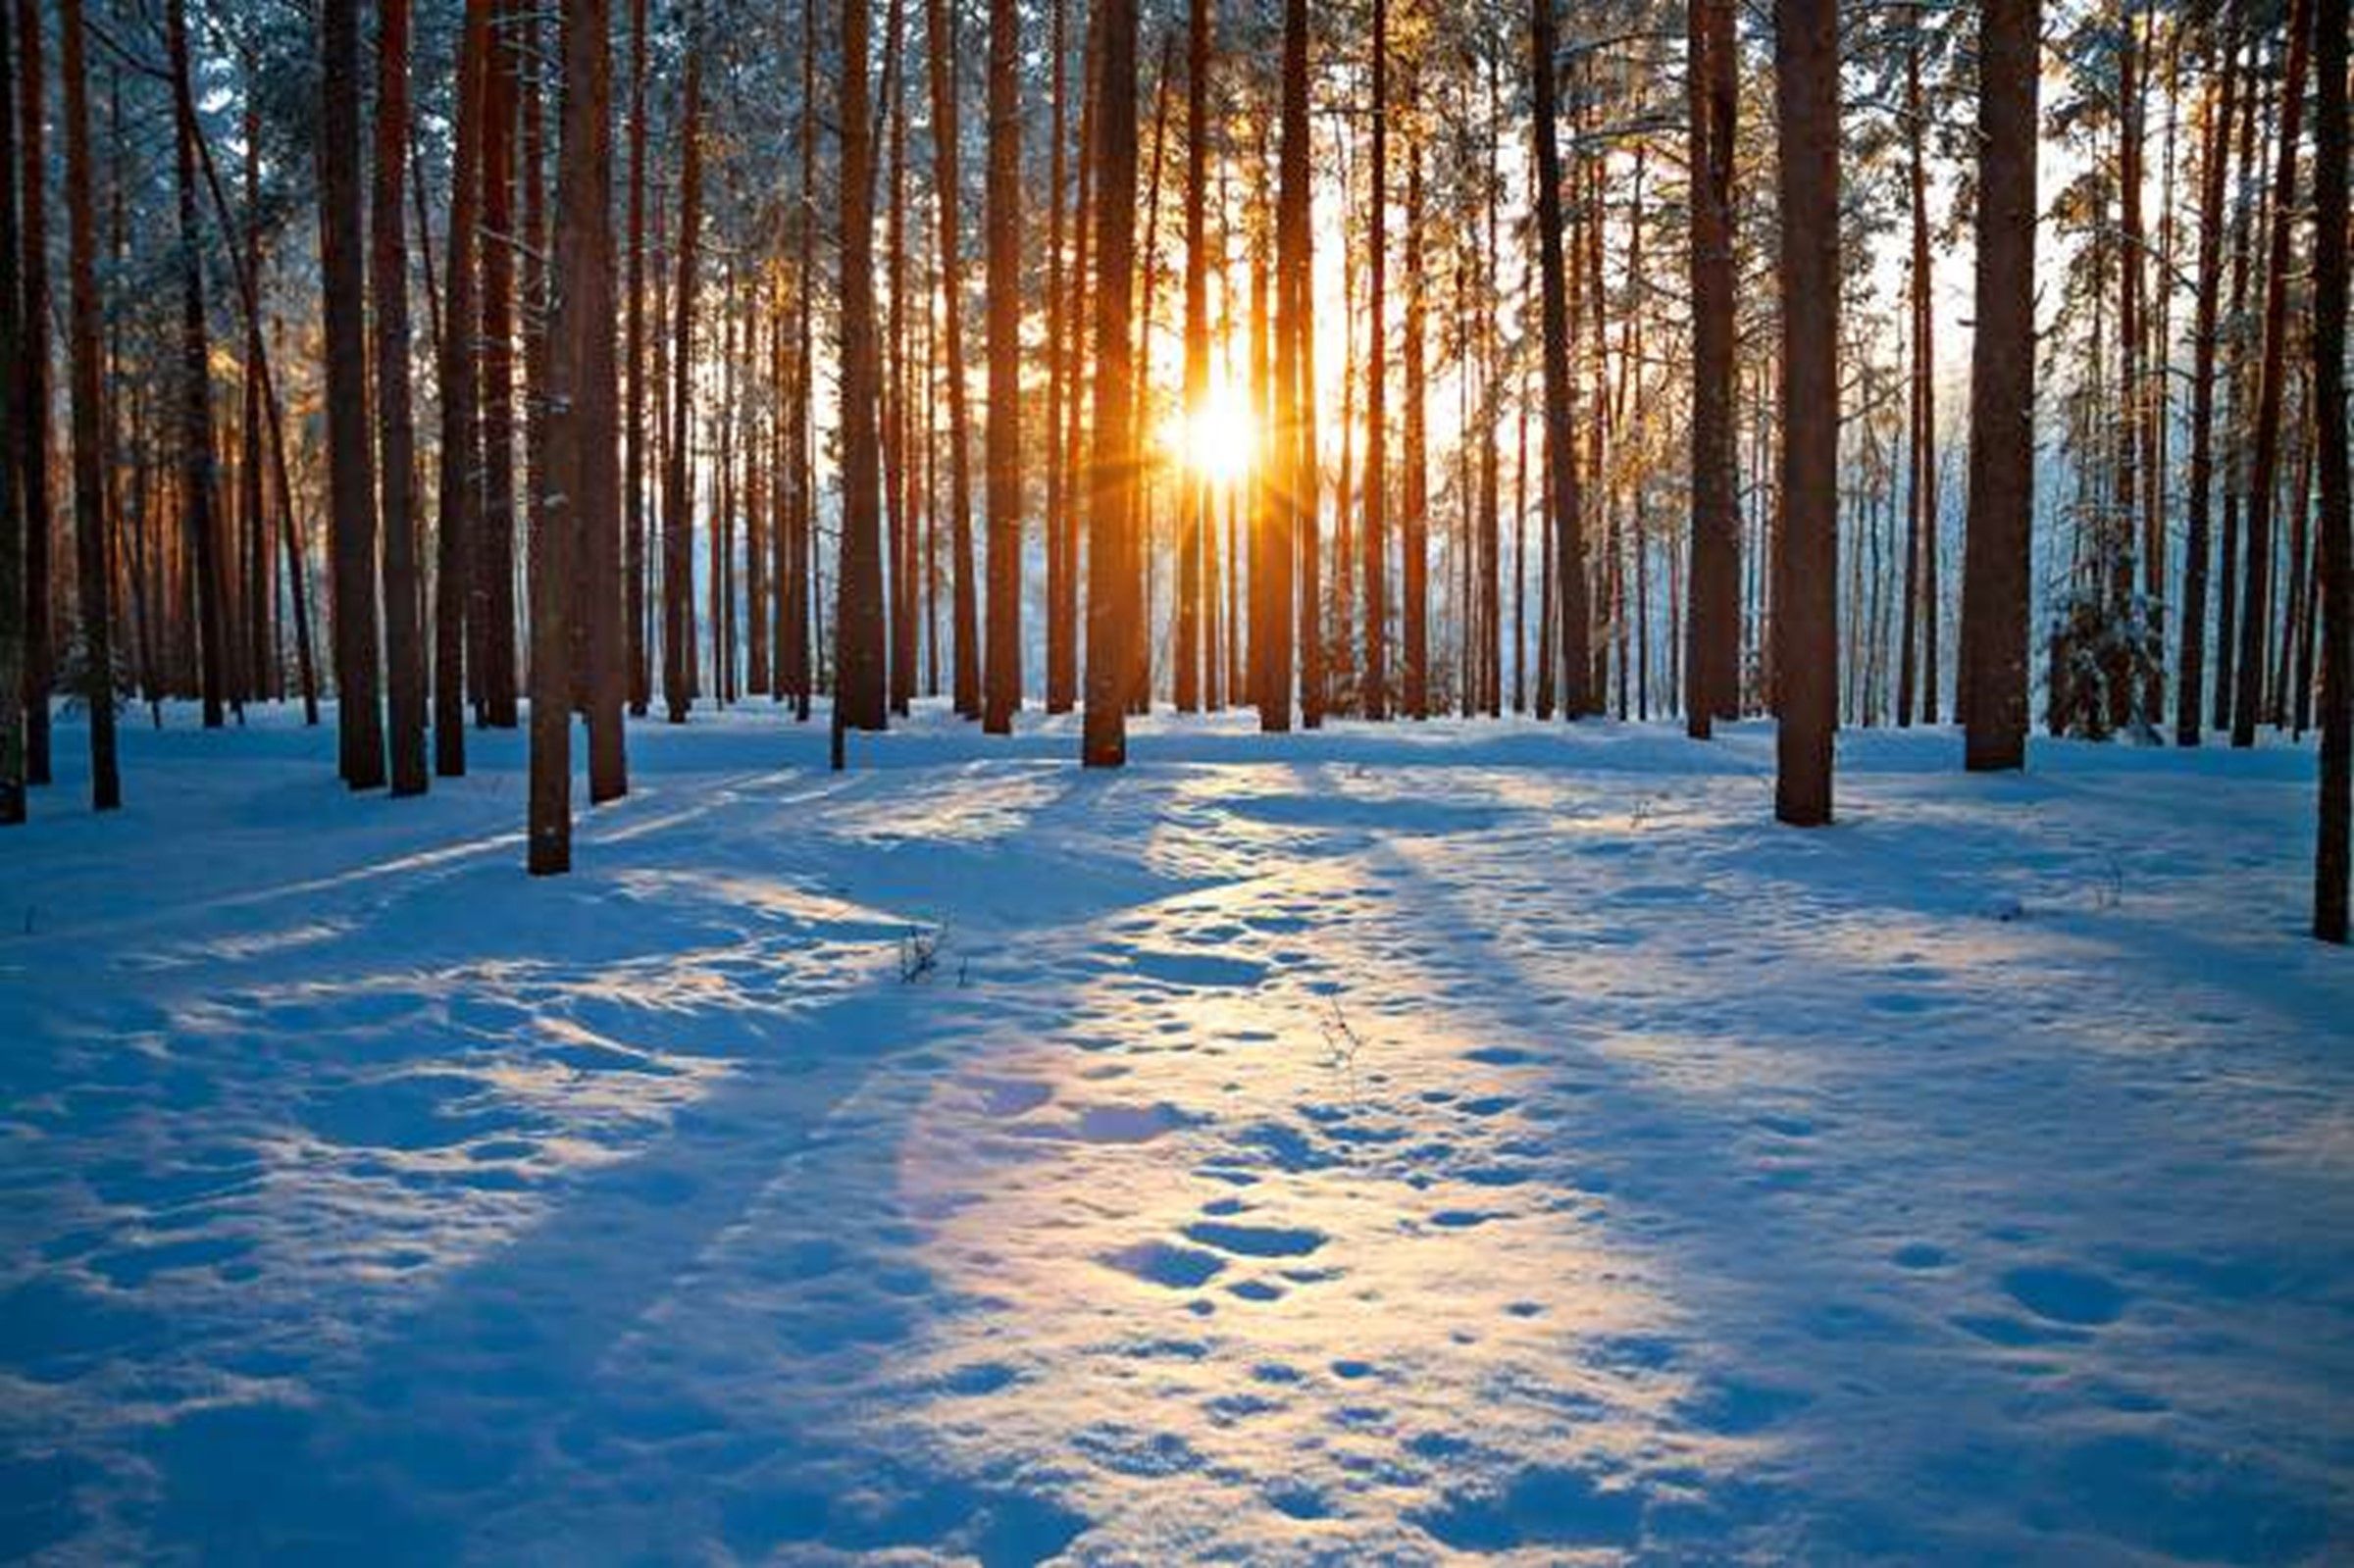 winter sun peeking through tree trunks